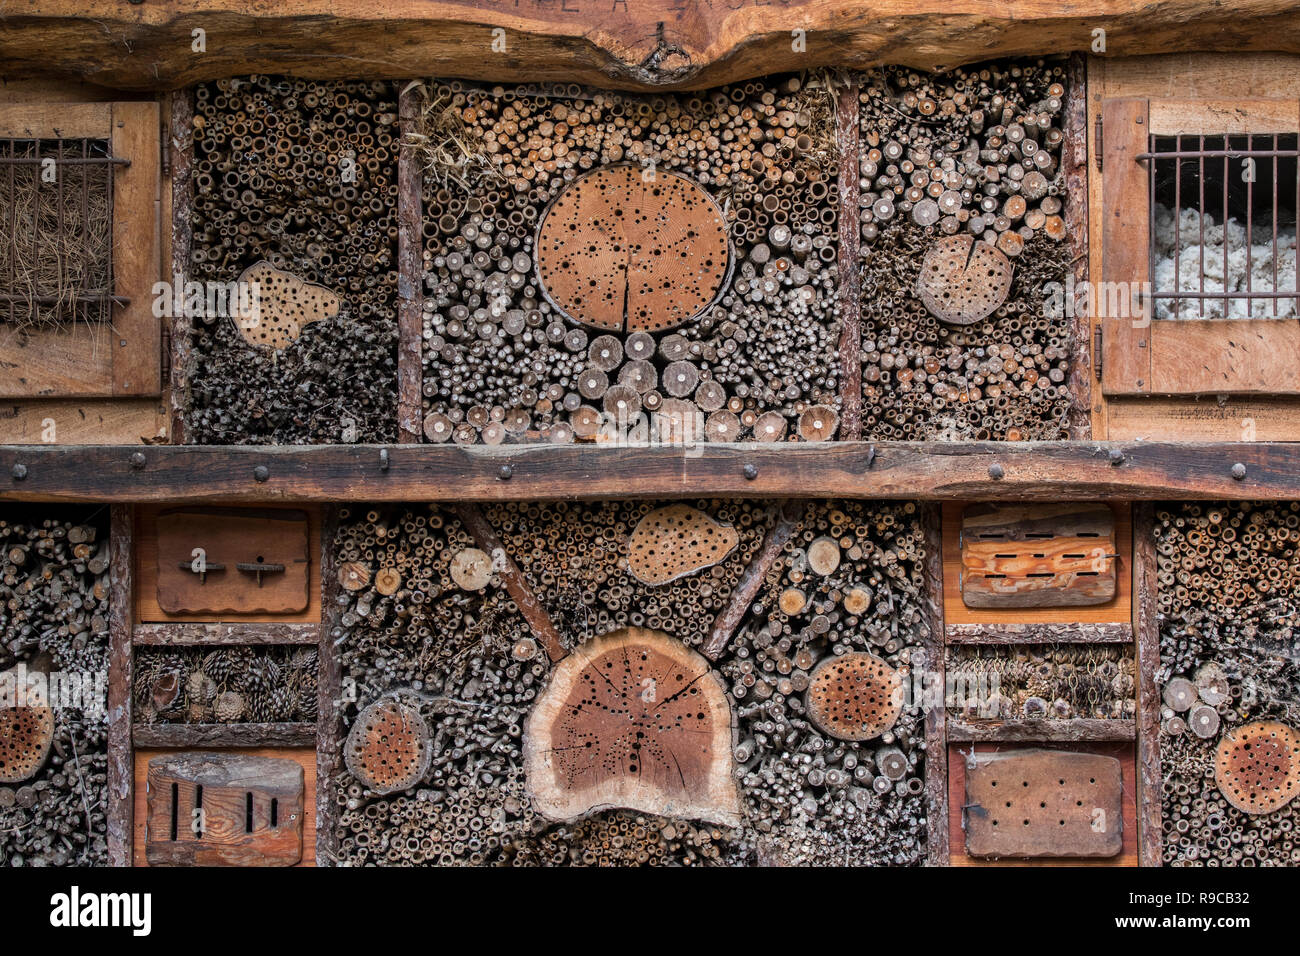 Hotel de insectos por abejas solitarias y lugar de anidamiento artificial para insectos o invertebrados ofreciendo nido agujeros / cavidades en tallos huecos y bloques de madera Foto de stock